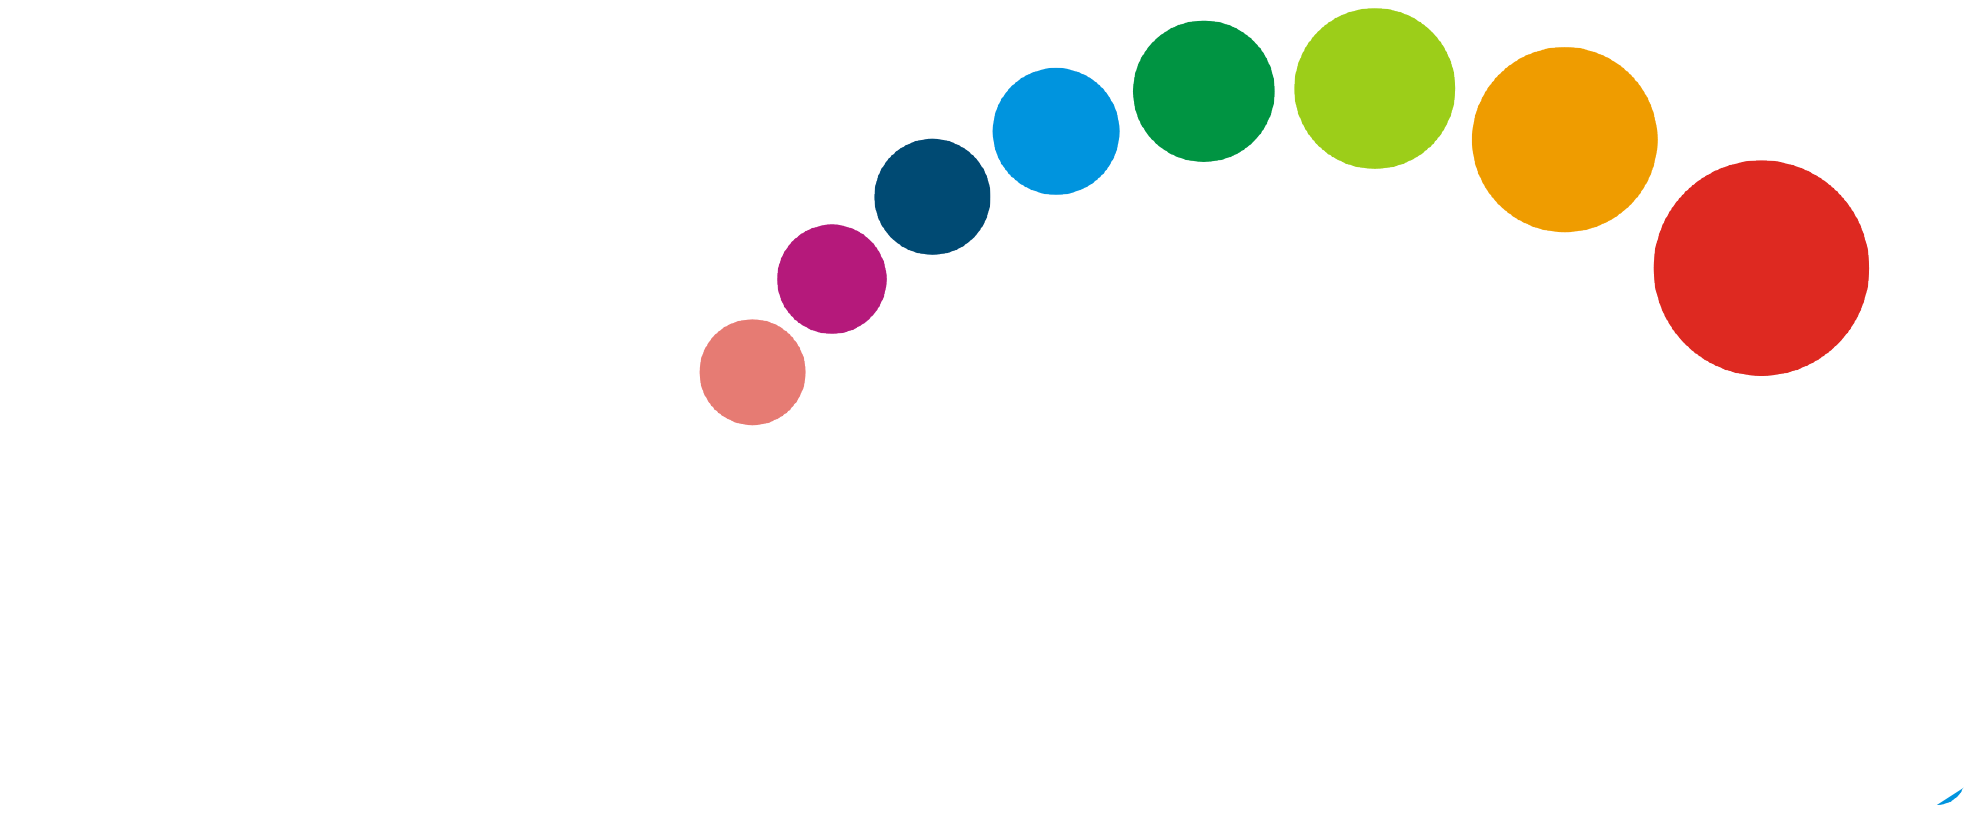 BridgeIt resources